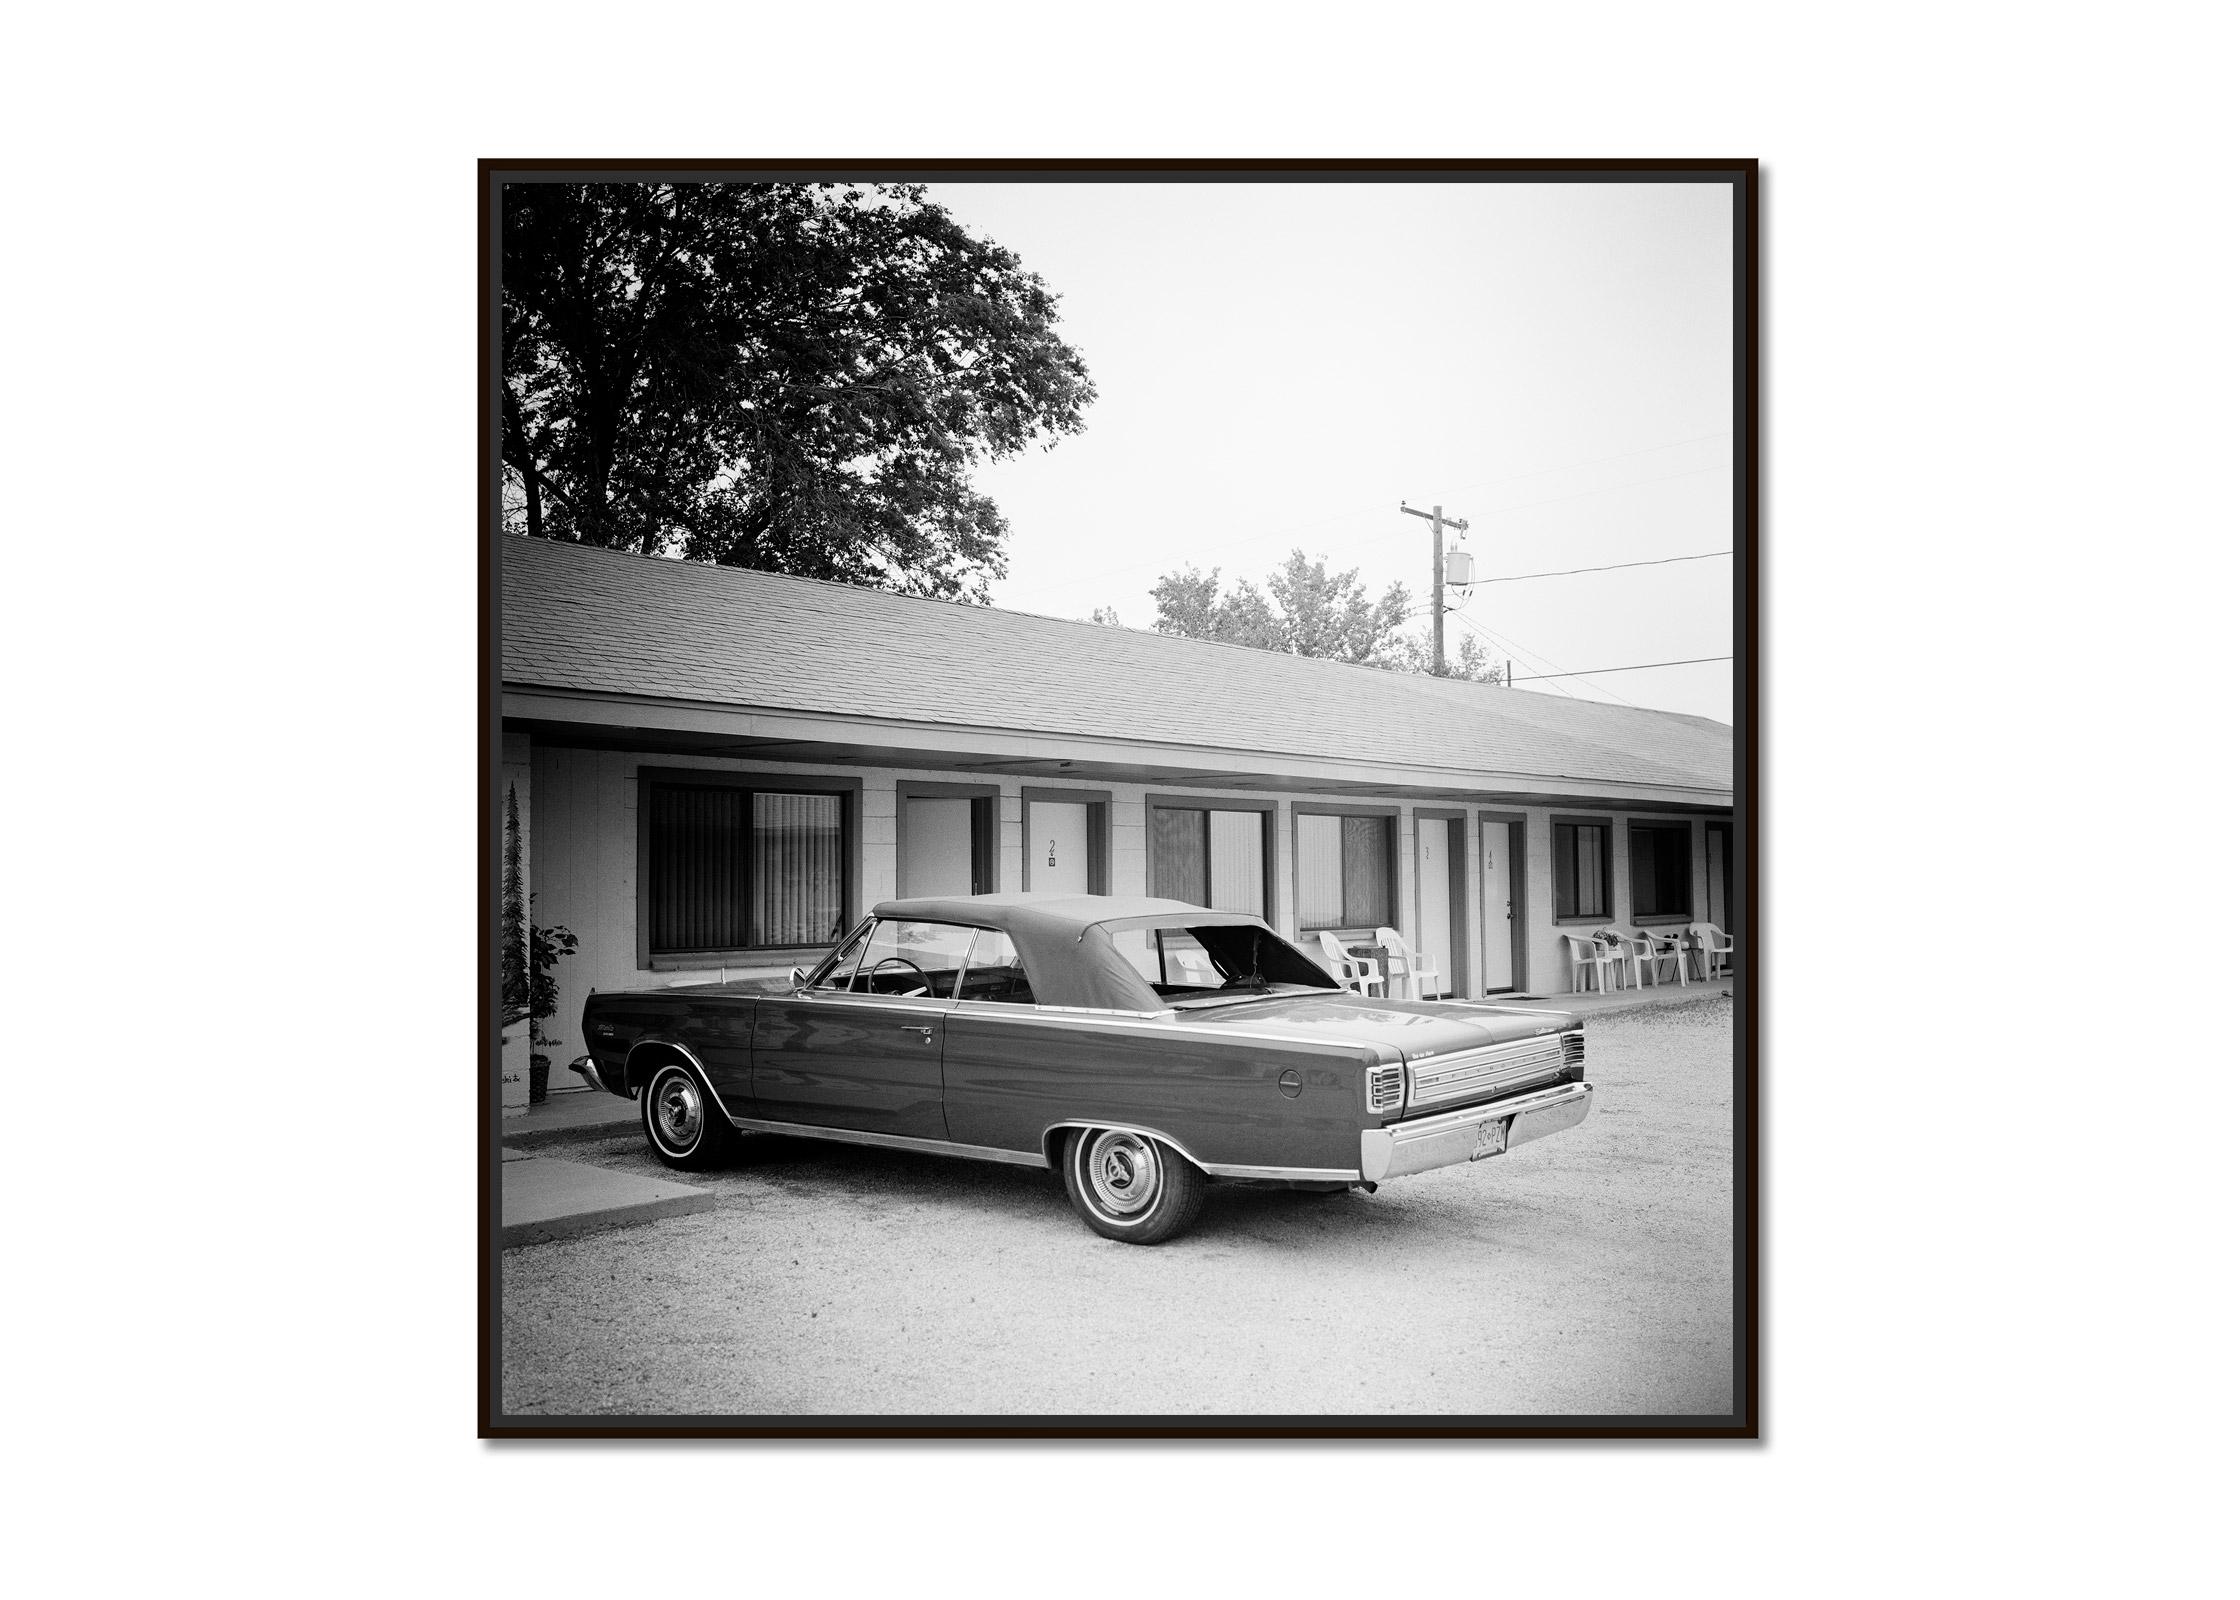 1967 Plymouth, Oldtimer, Route 66, USA, Schwarz-Weiß-Kunst-Landschaftsfotografie – Photograph von Gerald Berghammer